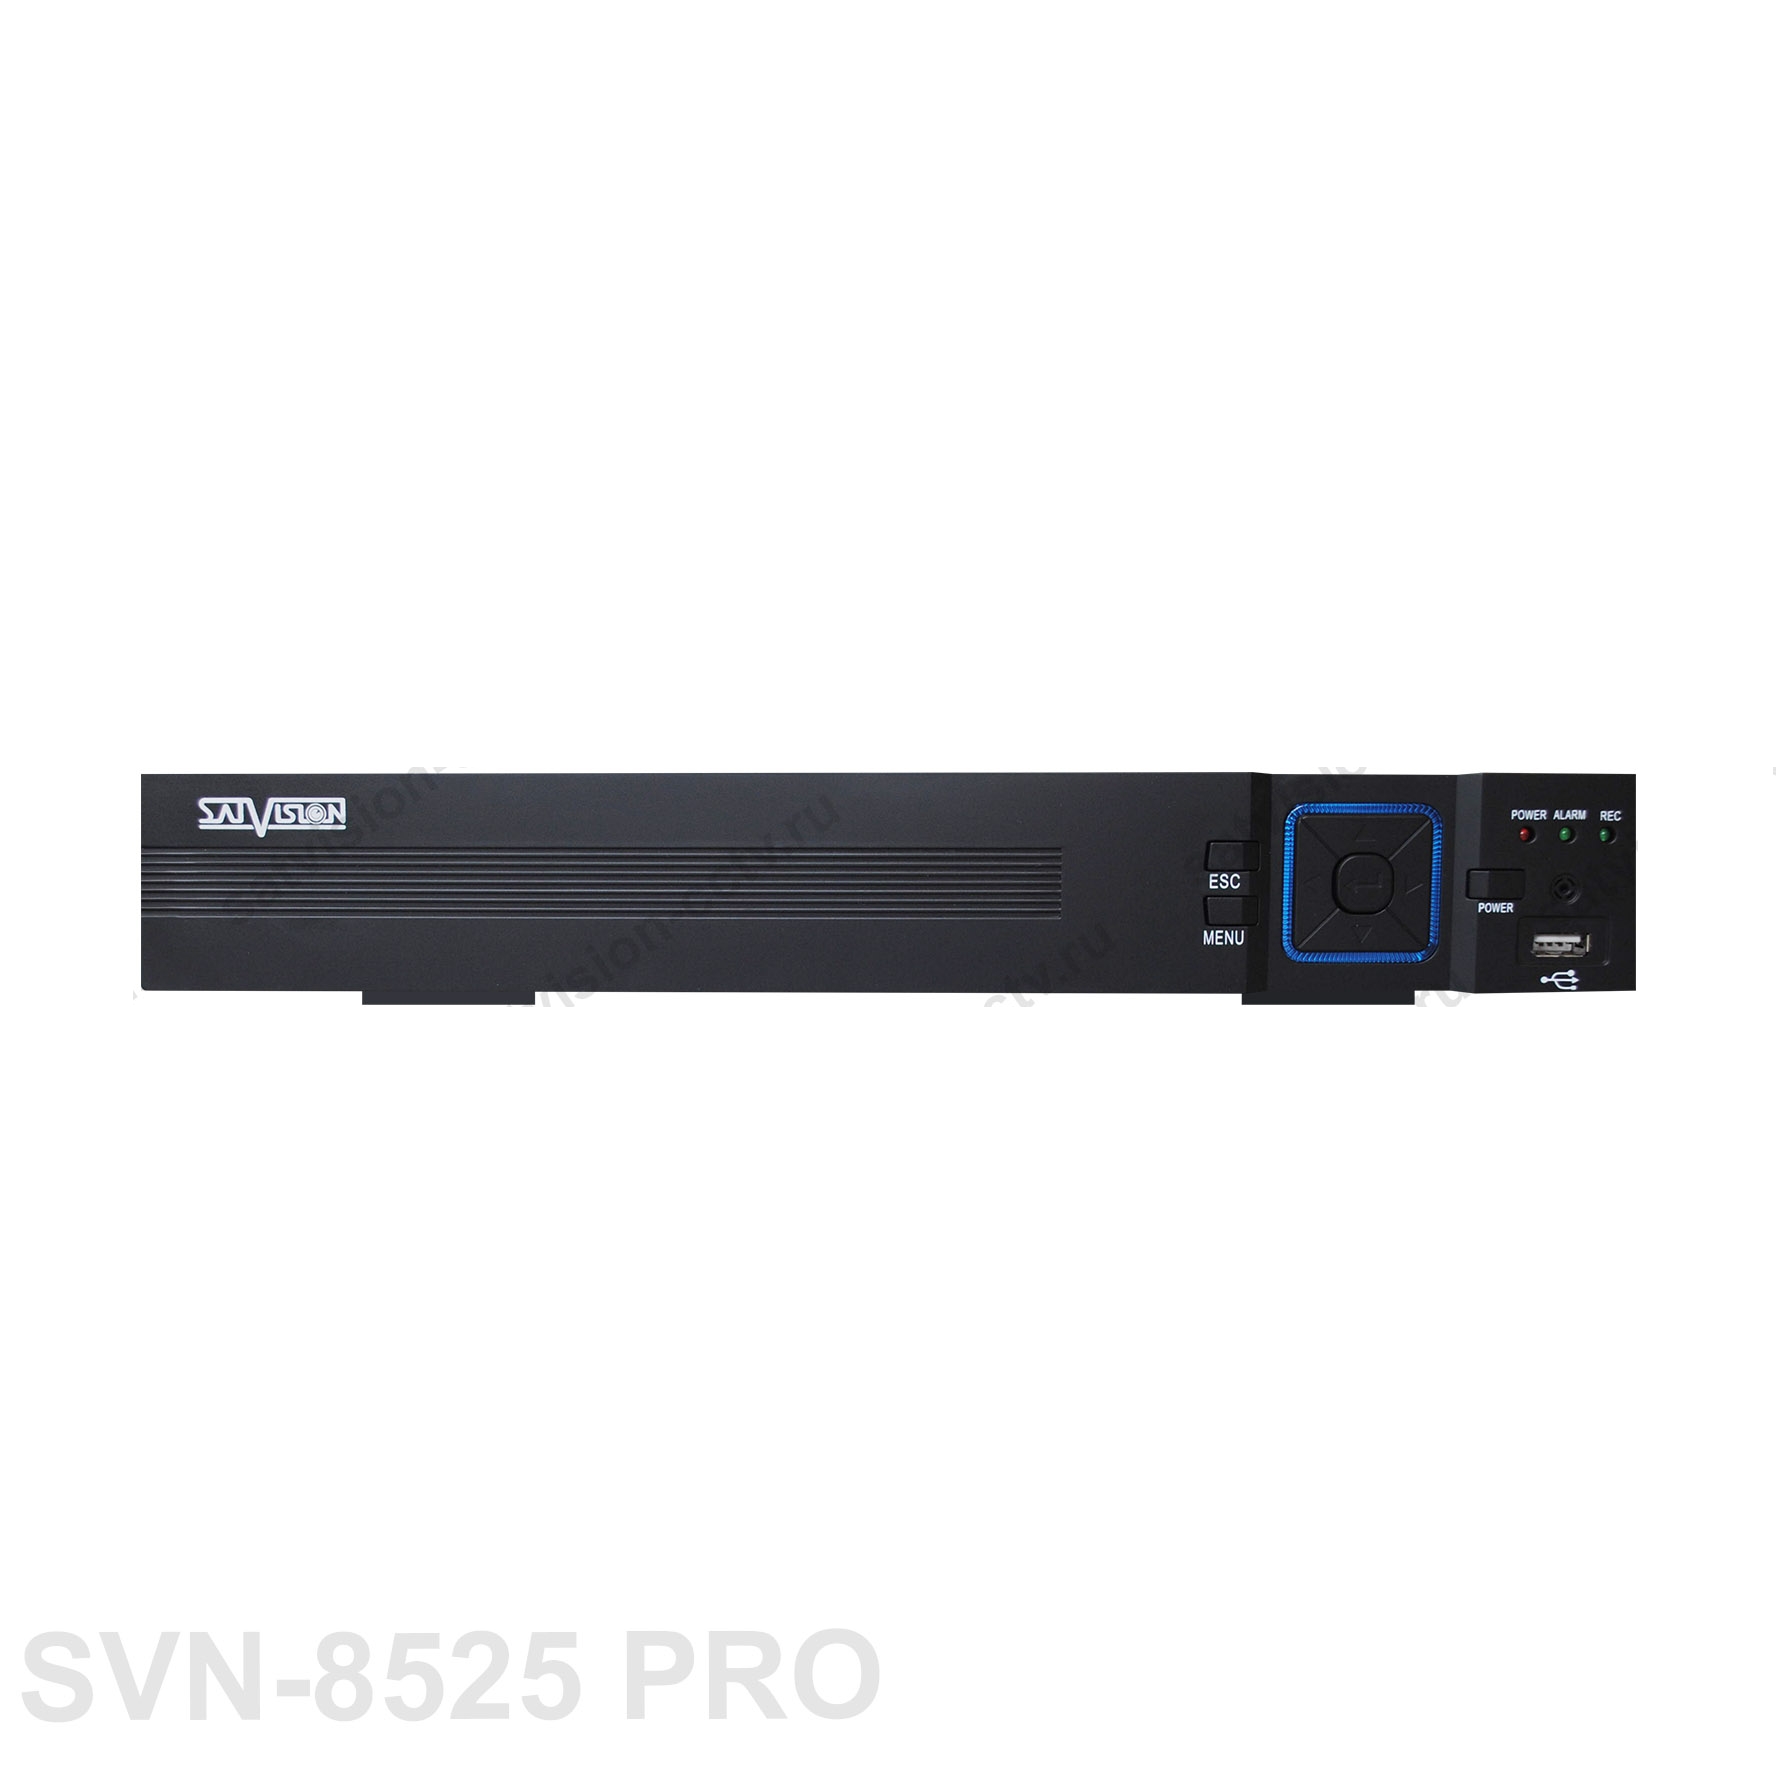 Система видеонаблюдения Satvision SVN-8525 PRO